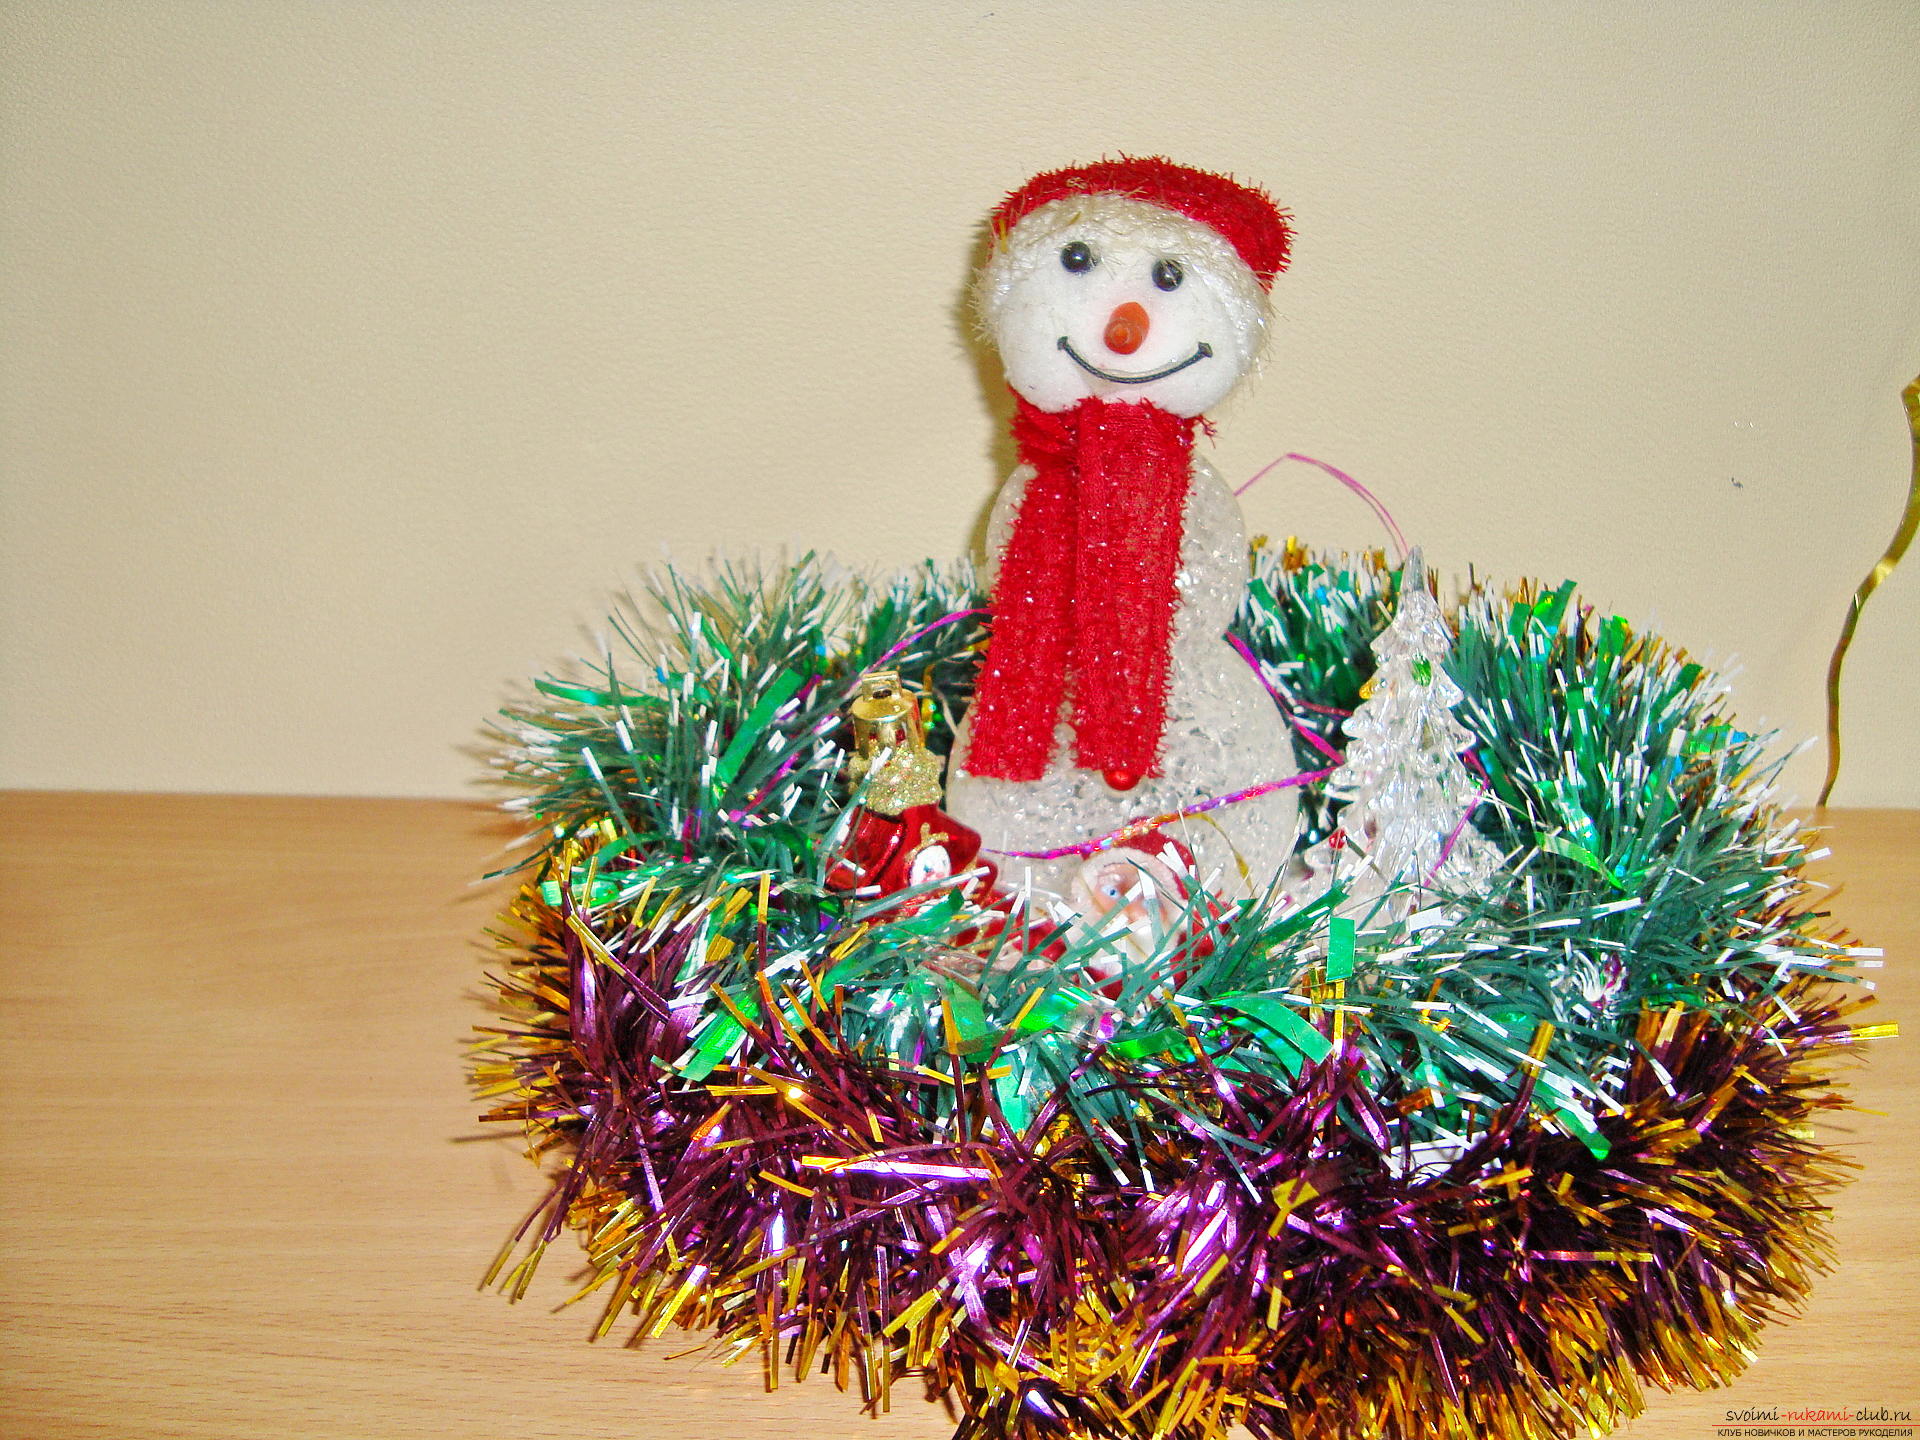 Мастер-класс с фото и описанием научит как своими руками сделать новогоднюю поделку - снеговика. Фото №2